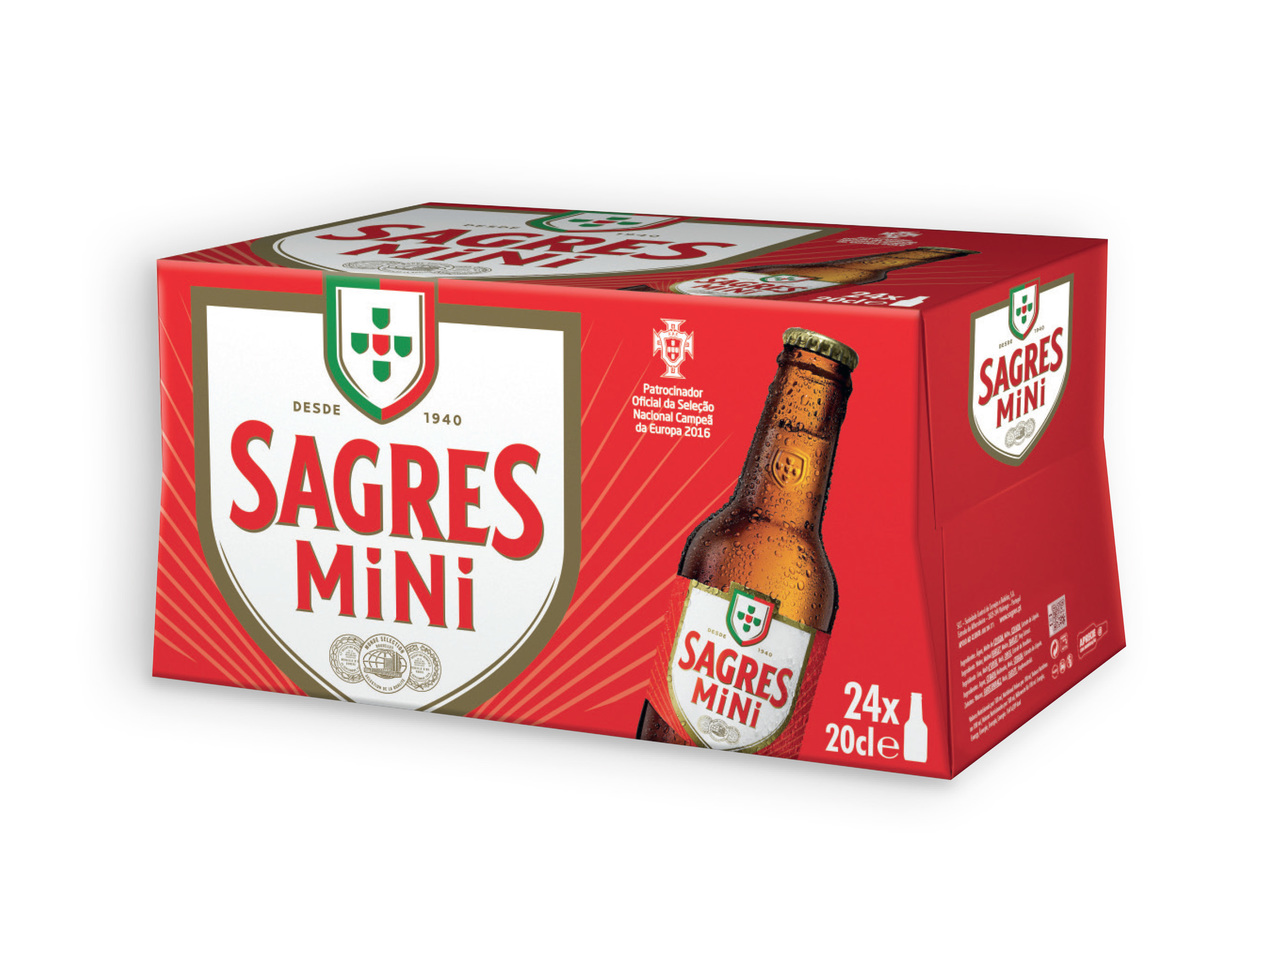 SAGRES(R) Cerveja Mini